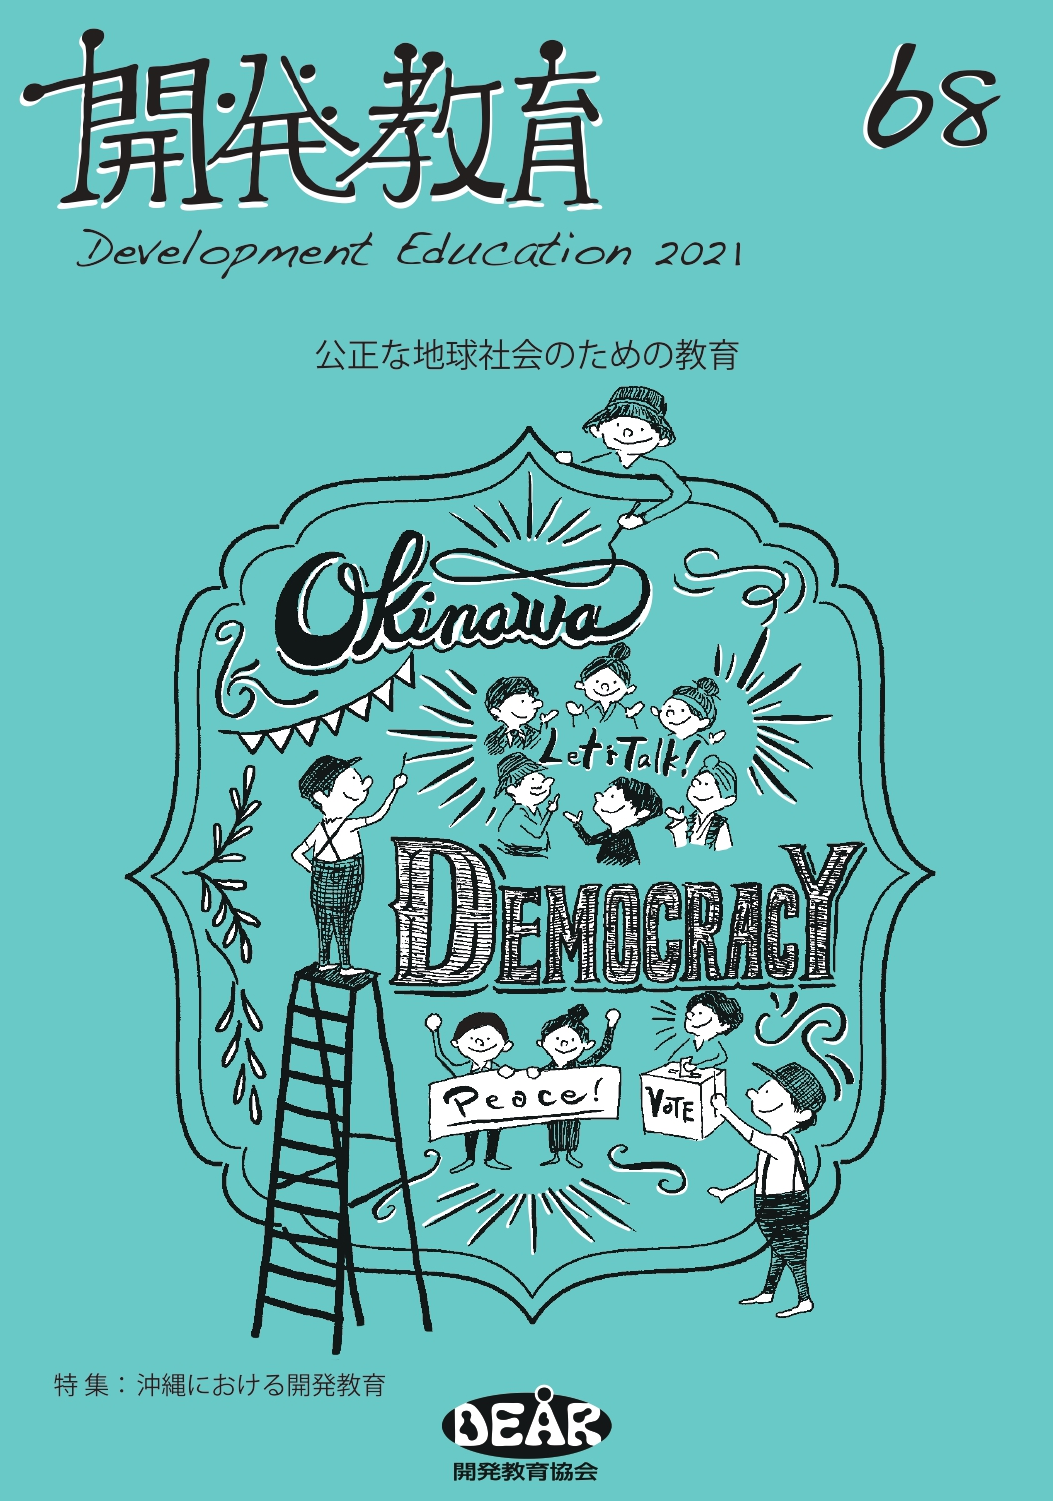 機関誌『開発教育』最新号「沖縄における開発教育」発行！